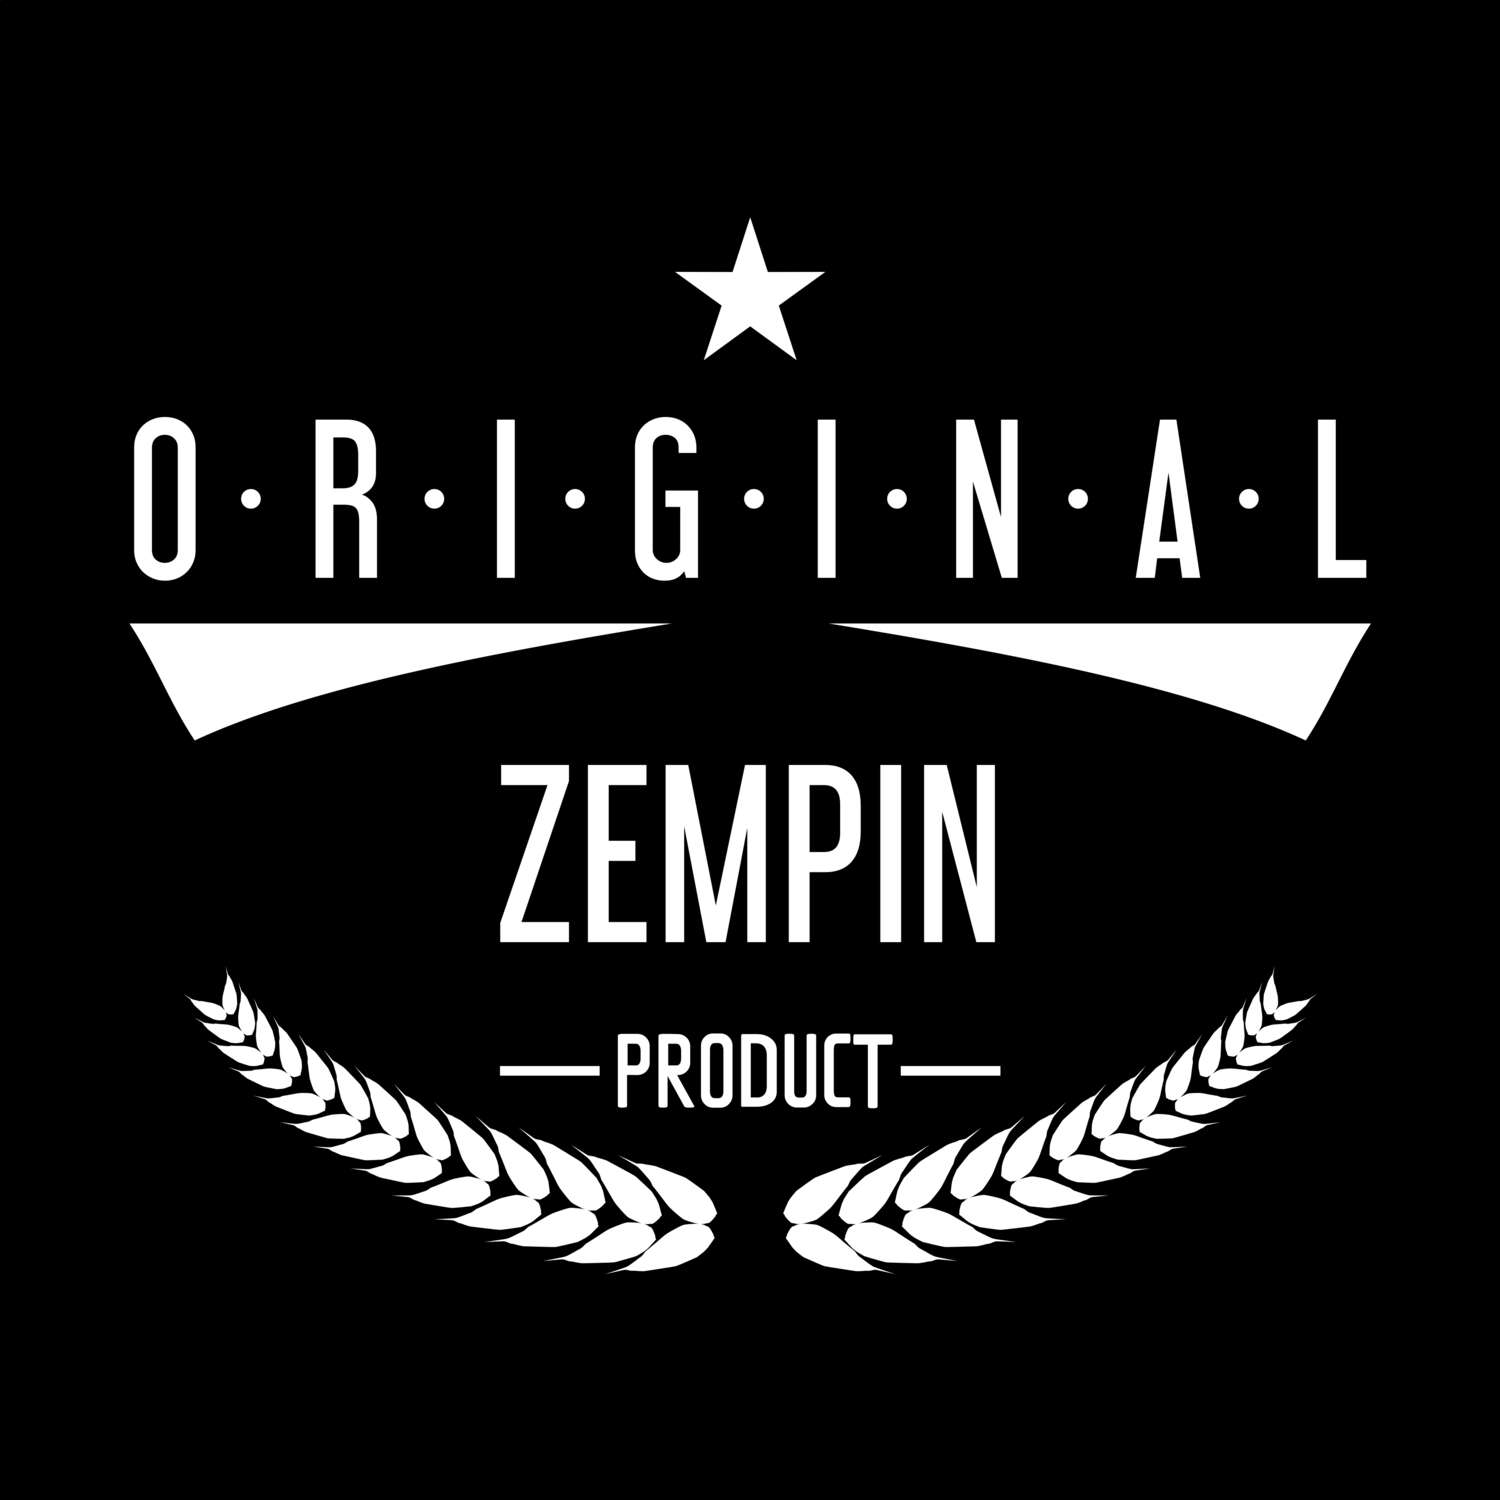 Zempin T-Shirt »Original Product«